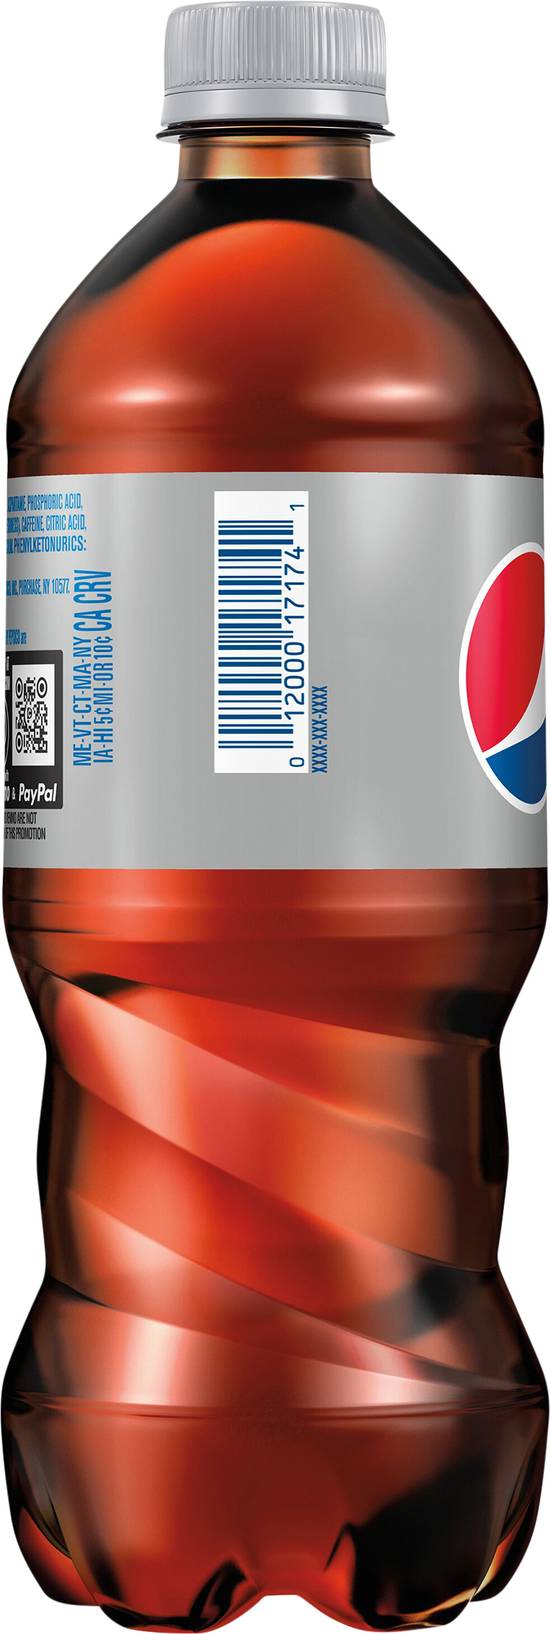 Pepsi Classic Diet Soda (20 fl oz)